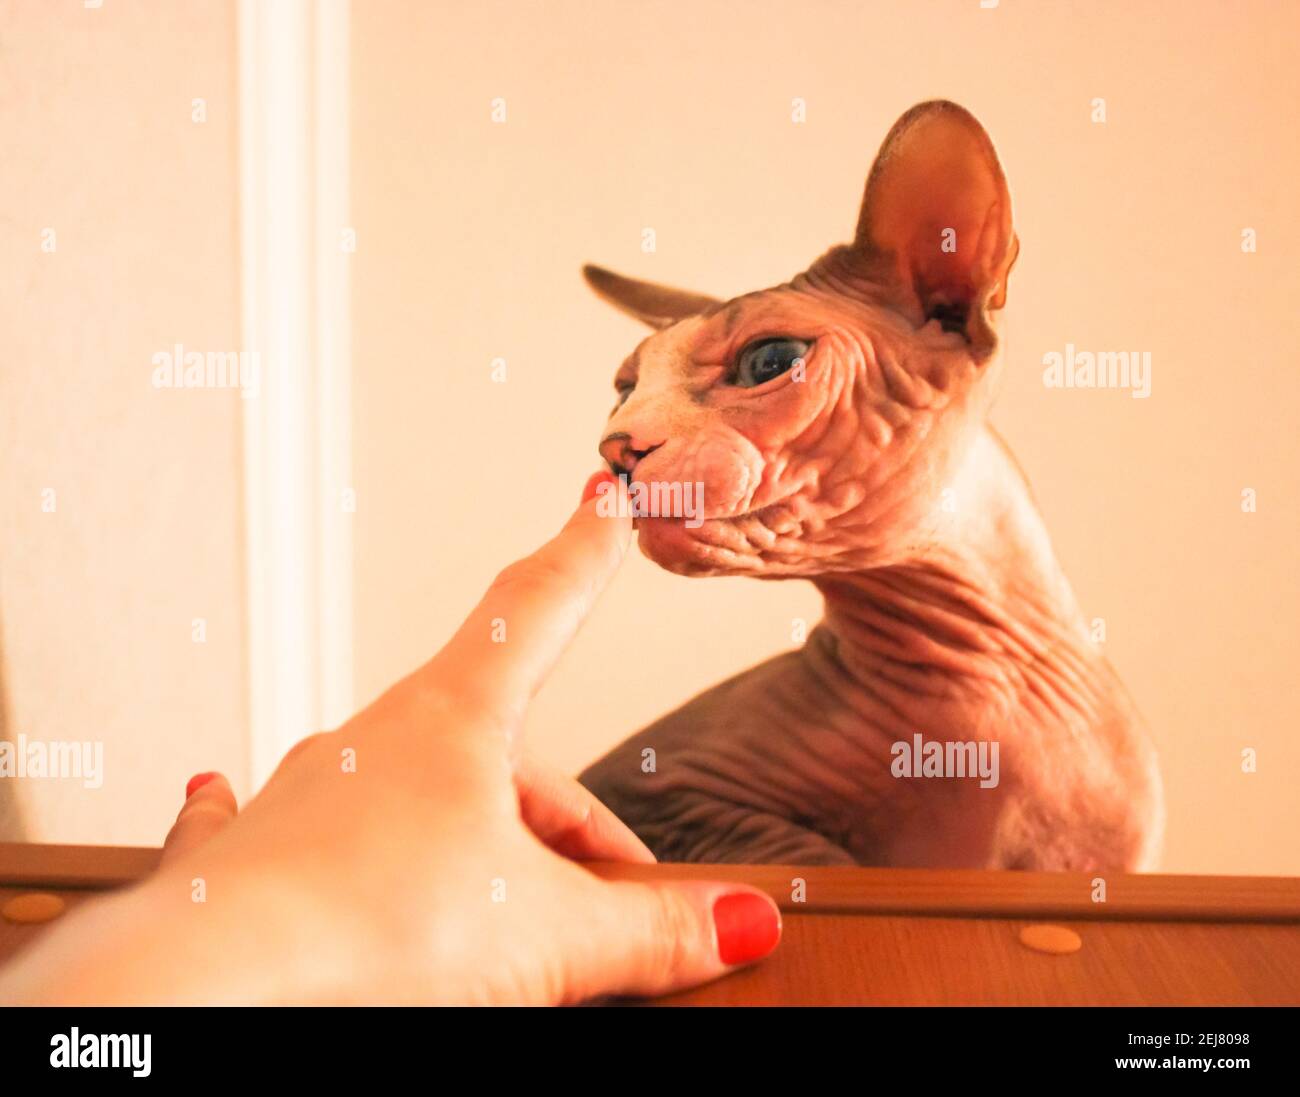 Une maîtresse jouant avec un chat Sphynx canadien, touchant le nez du chat. Concept de relation entre l'homme et les animaux de compagnie. Banque D'Images